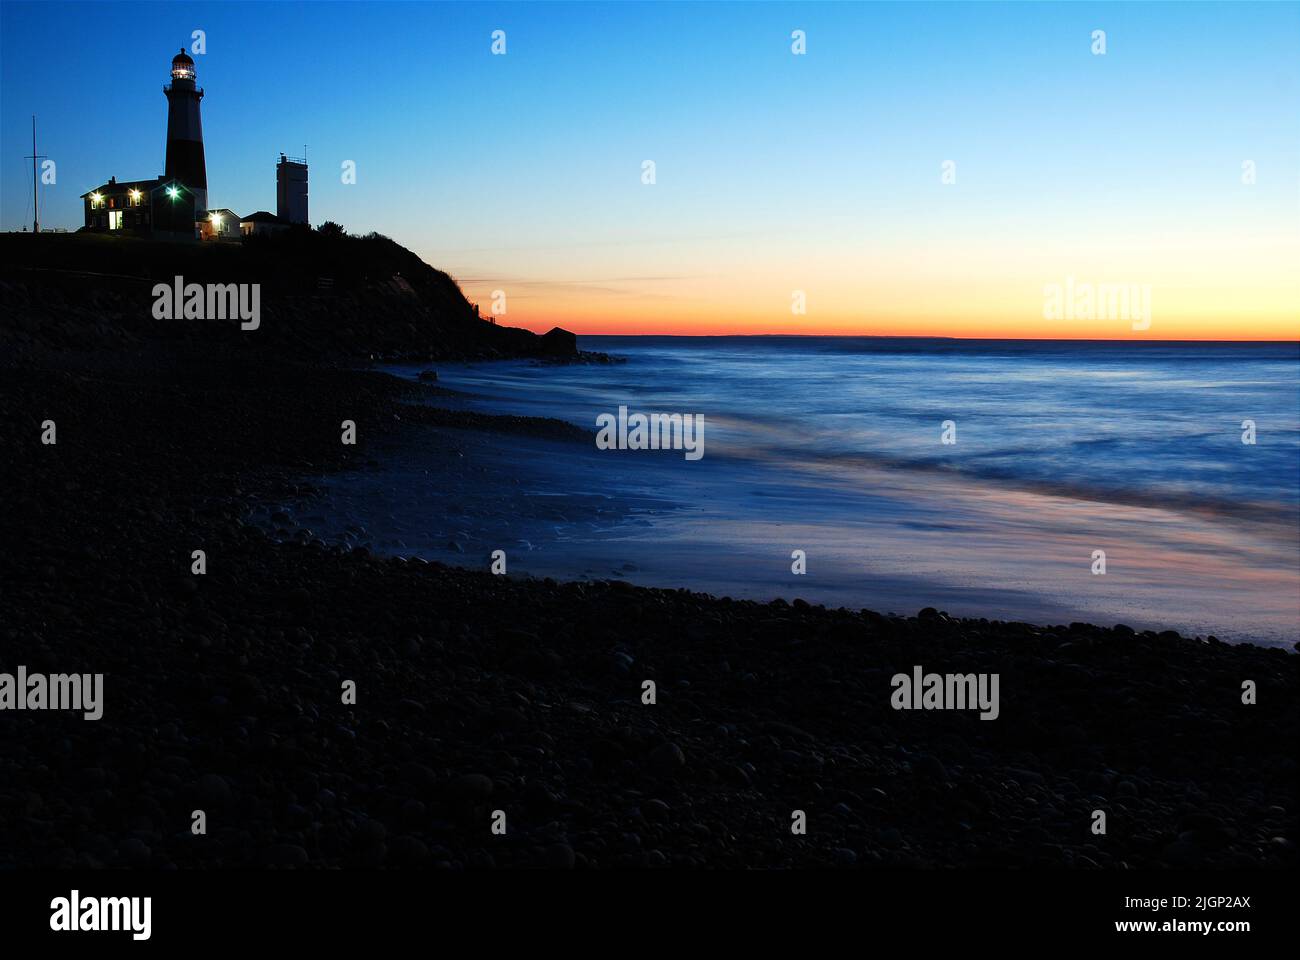 Der Sonnenaufgangshimmel macht den Montauk Point Lighthouse, an der östlichen Spitze von Long Island, New York, in Silhouette, während er sich im Meerwasser spiegelt Stockfoto